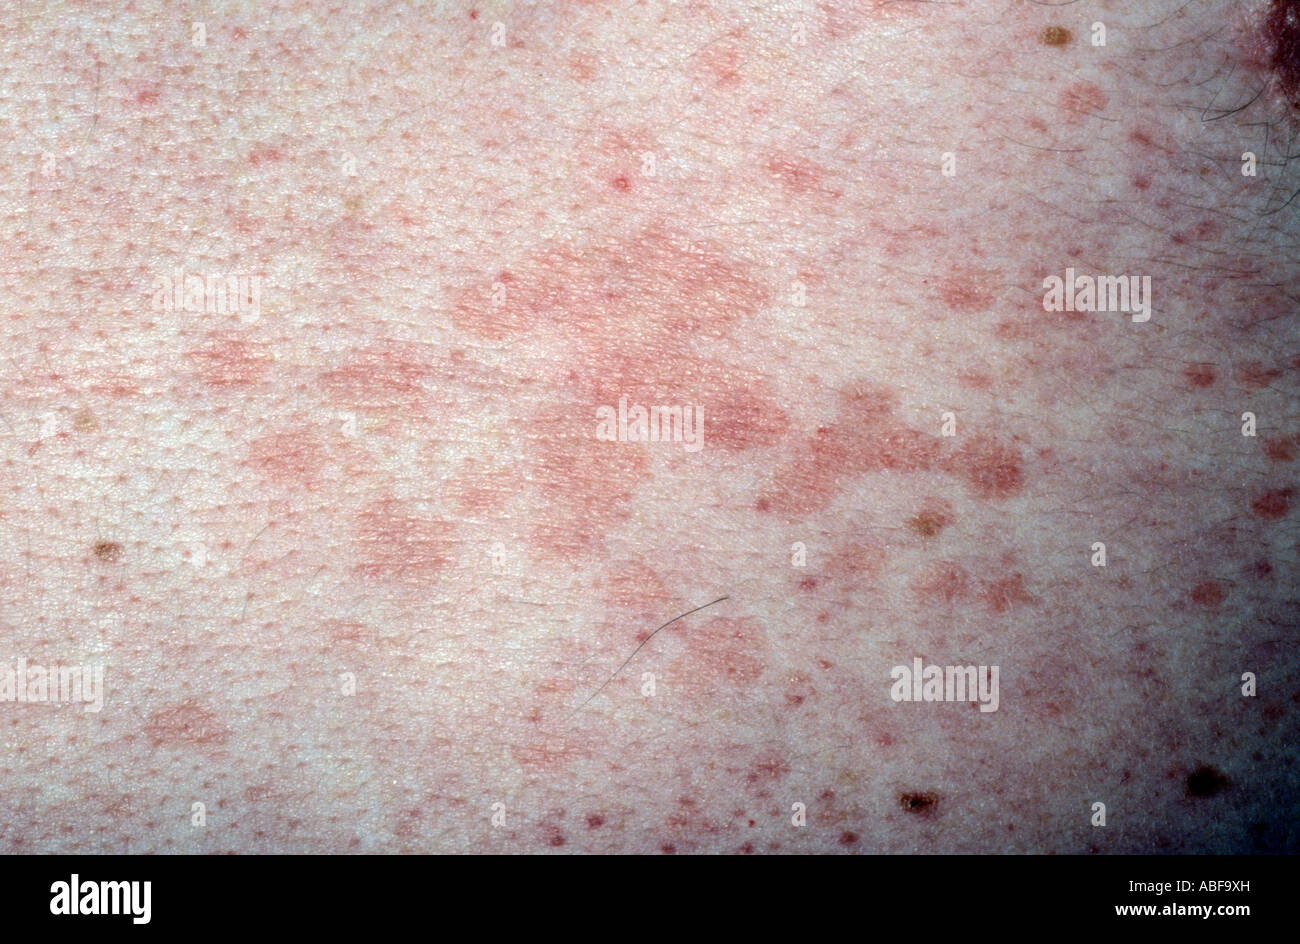 Virus Hautausschlag